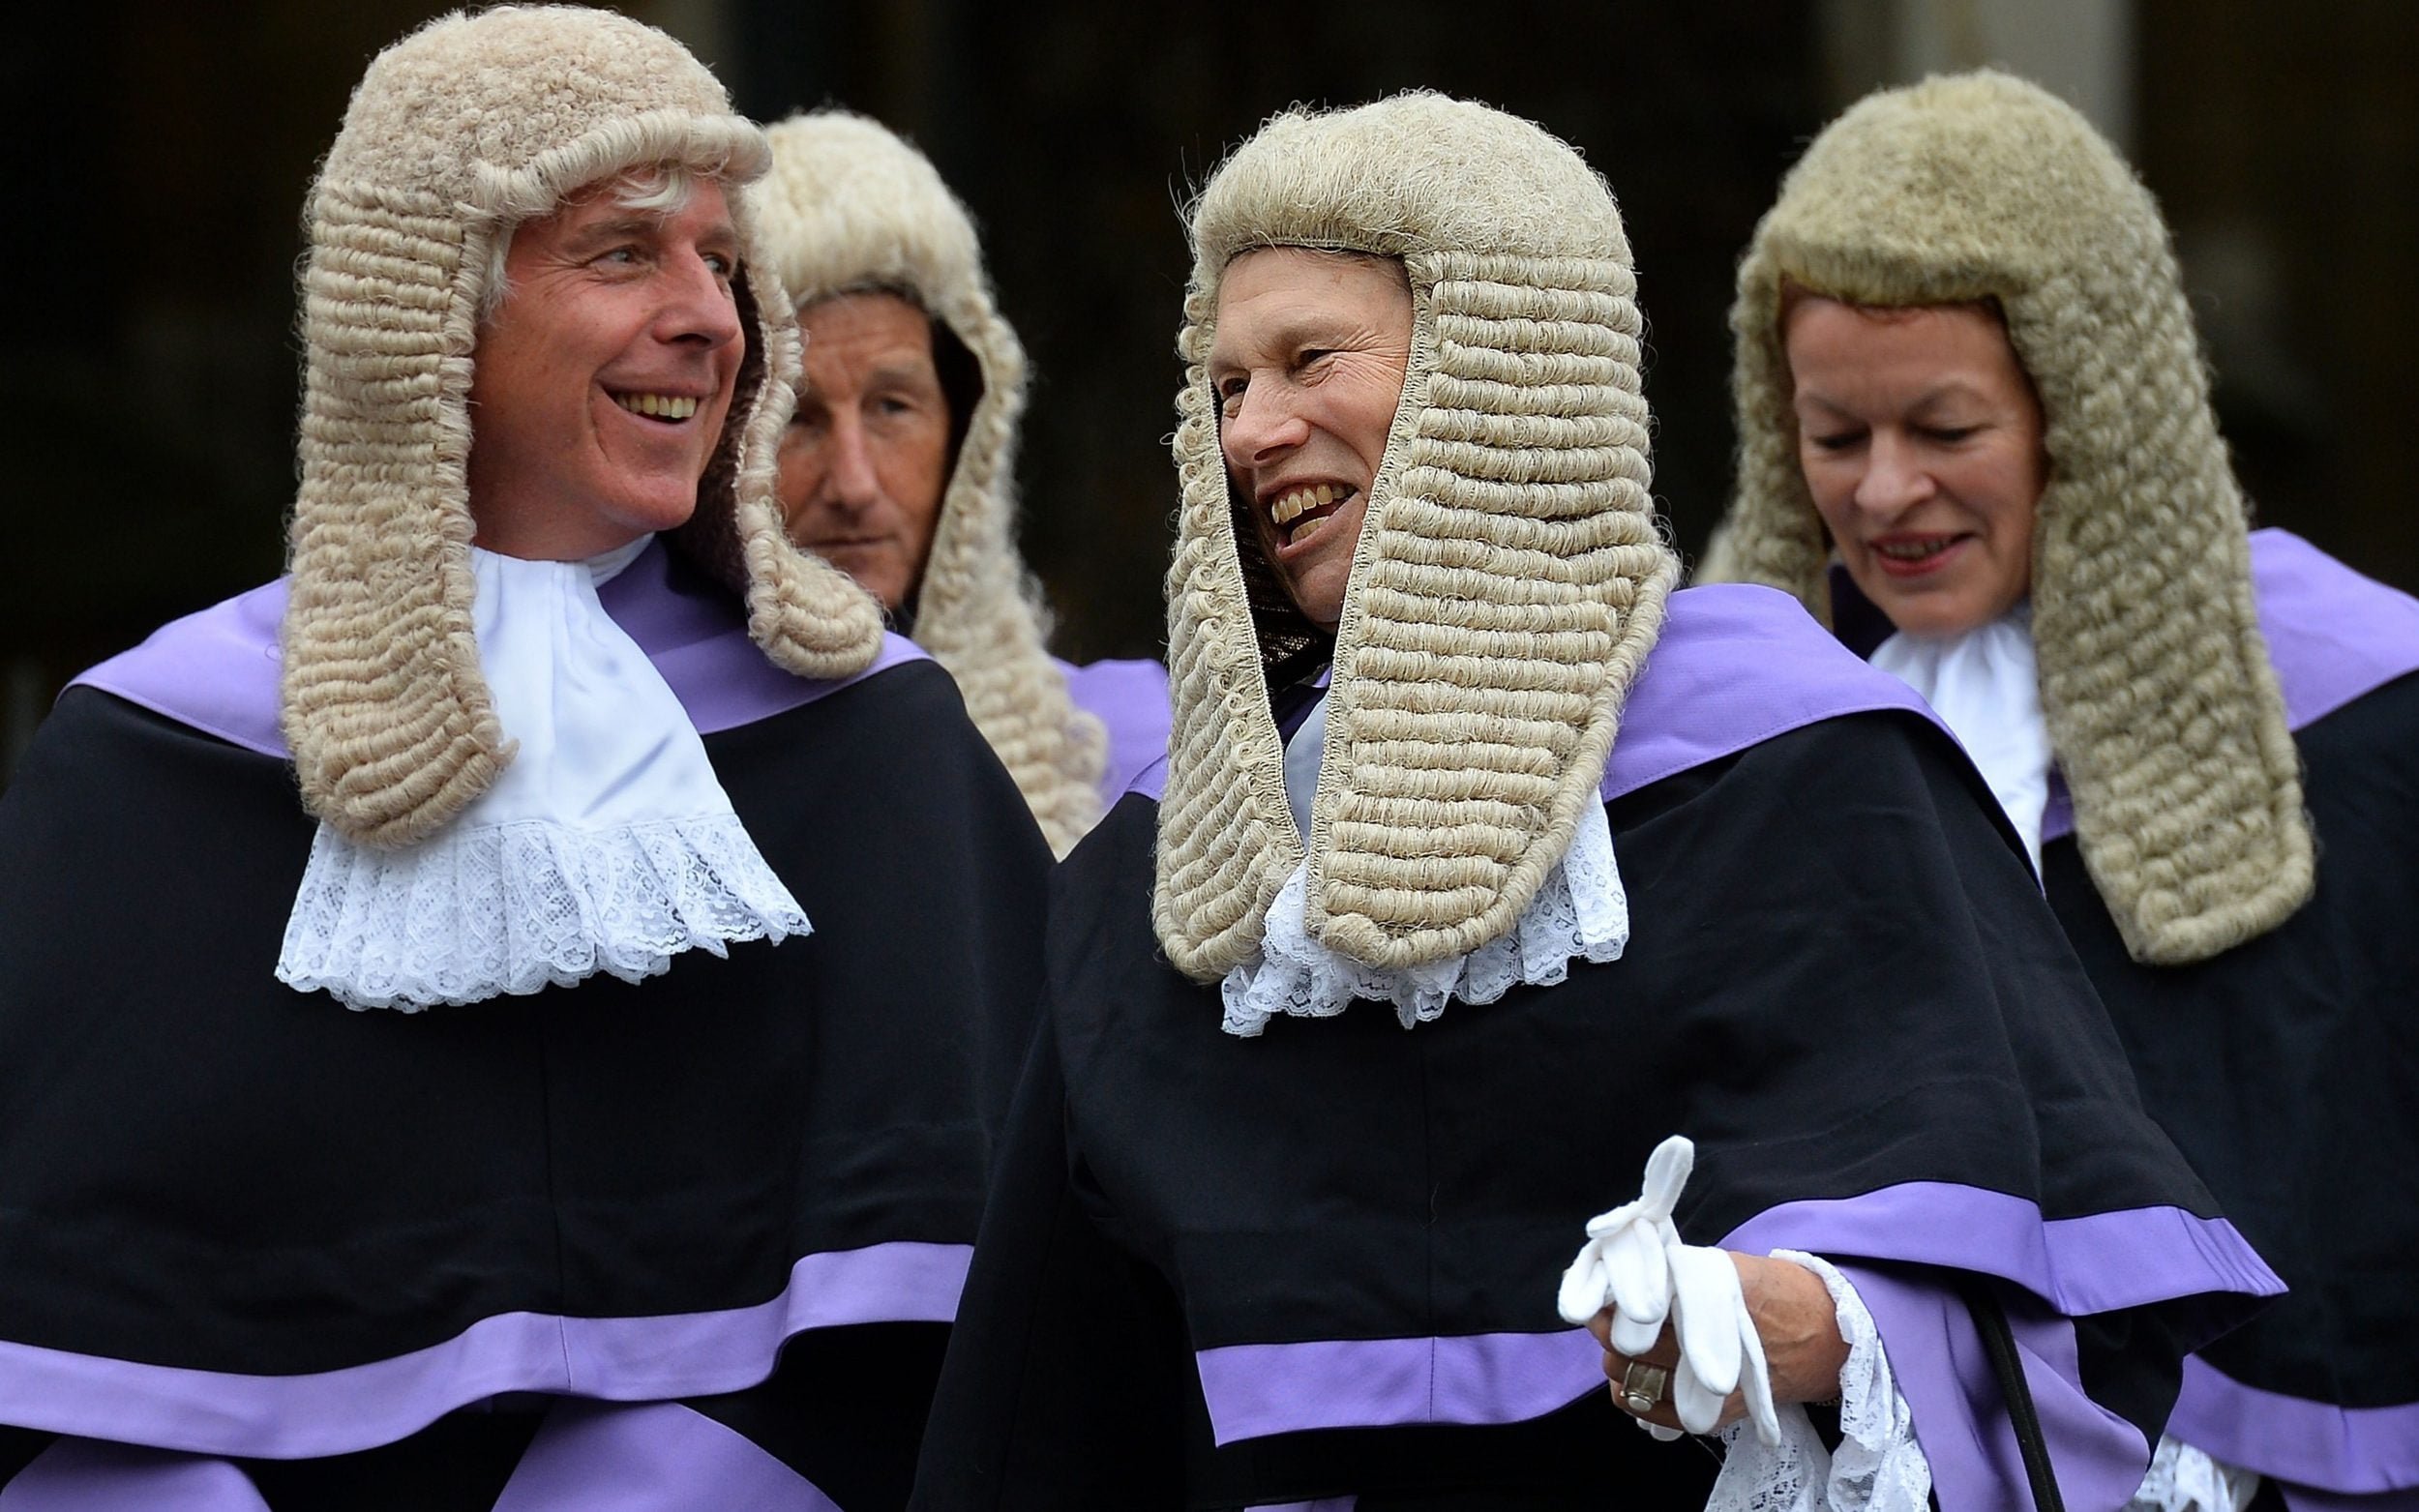  Proces de despăgubire judecat la Iaşi după prevederile unei legi din Anglia. Solicitanţii au avut o surpriză foarte mare